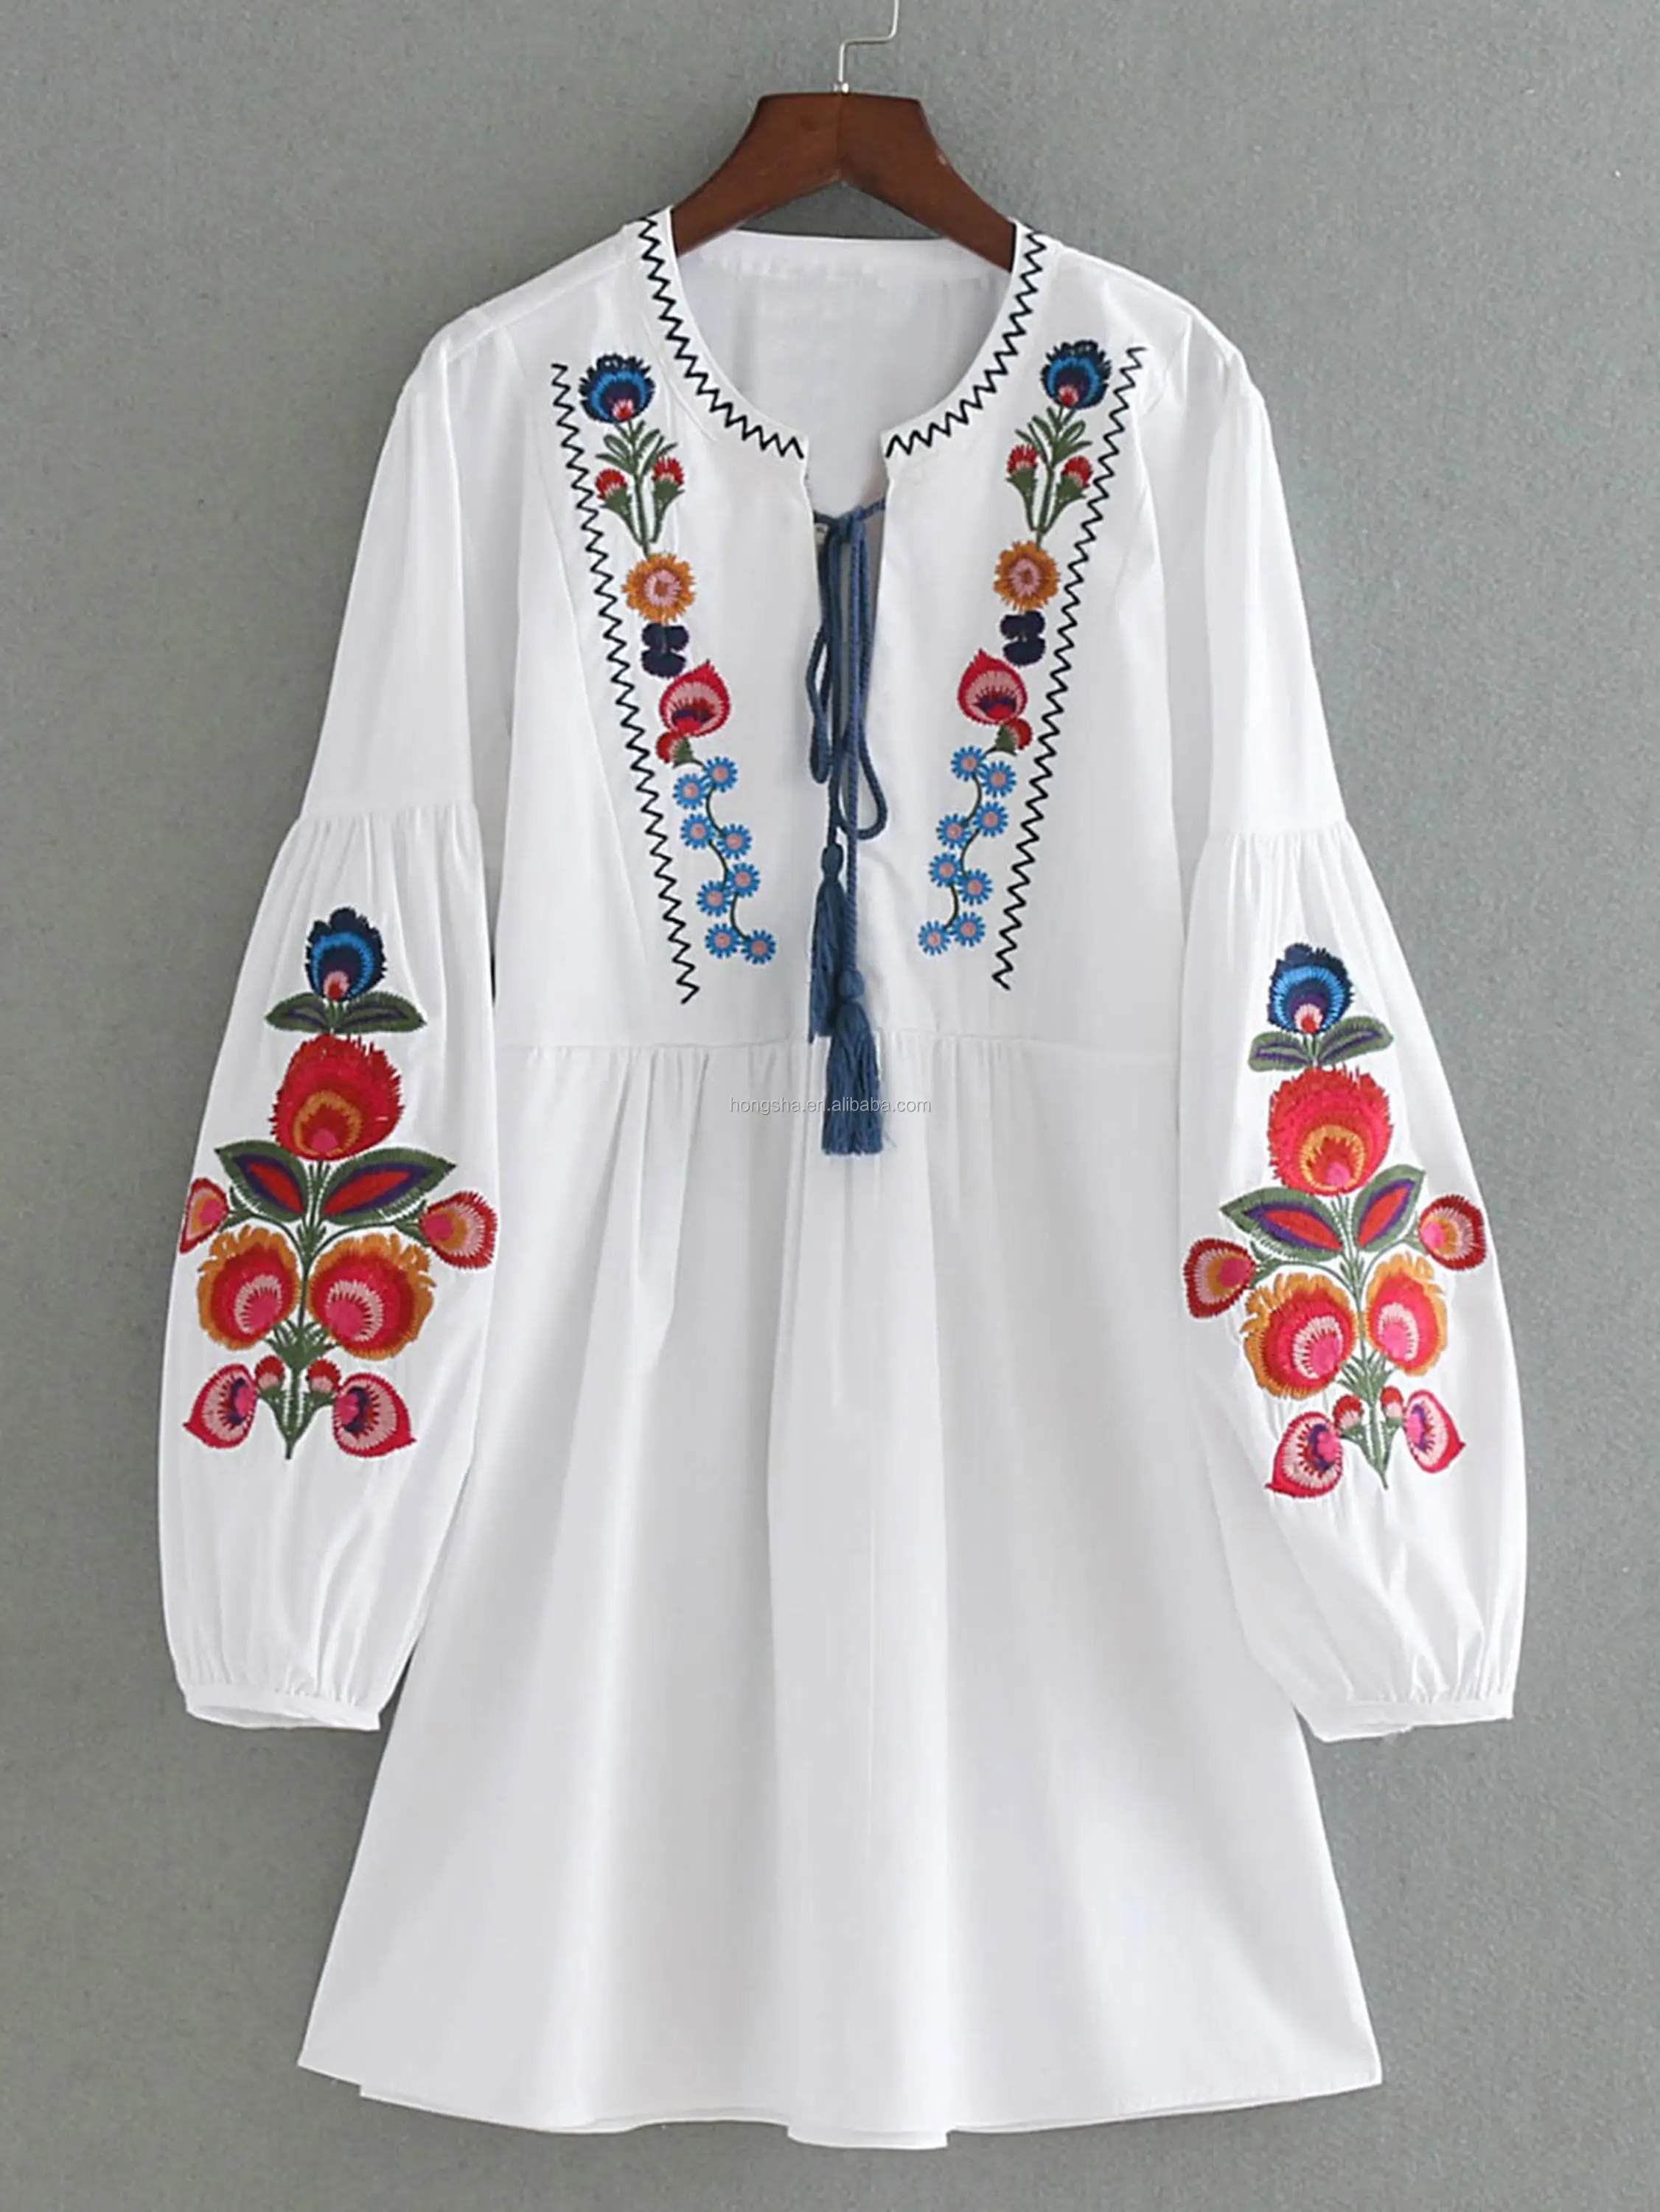 女性用ドレスhsd51ボヘミアンファッションの服アリババ卸売製品 Buy ボヘミアン服 服 女性のための Product On Alibaba Com